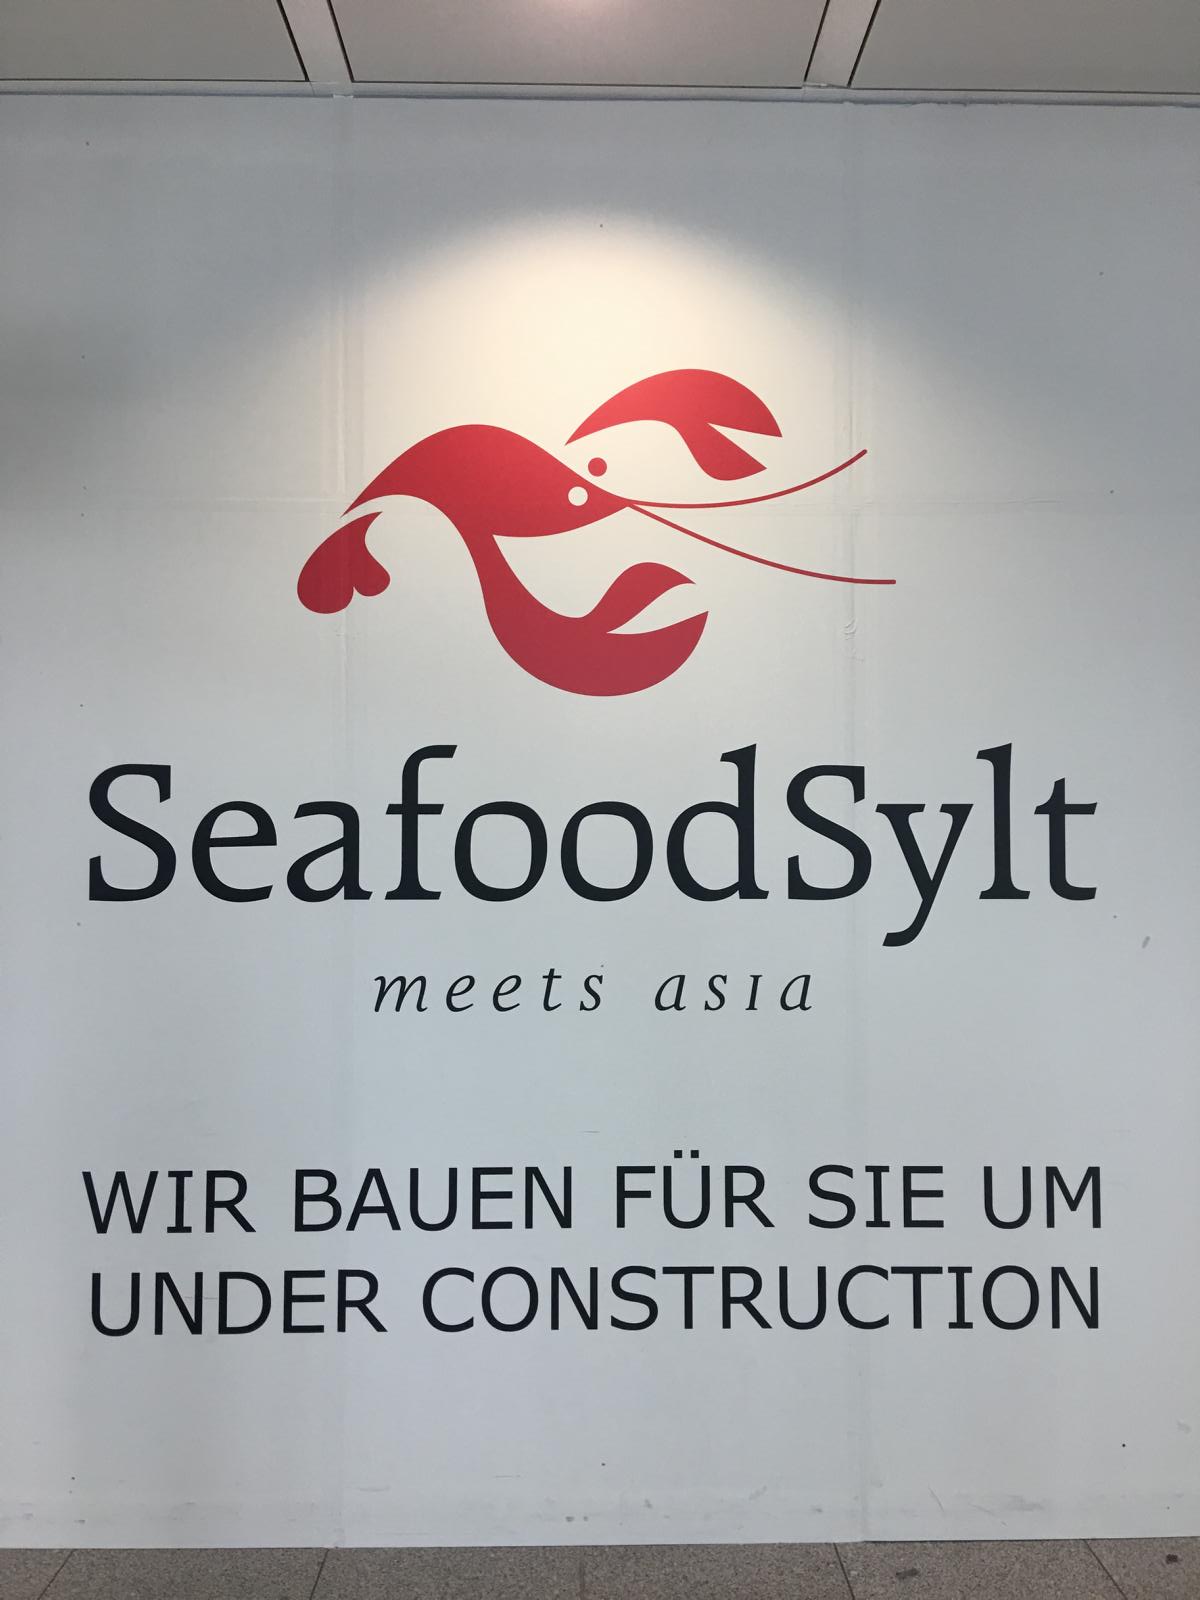 Überprüfung der Estrichfestigkeit und der Oberflächenzugfestigkeit bei Seafood Sylt